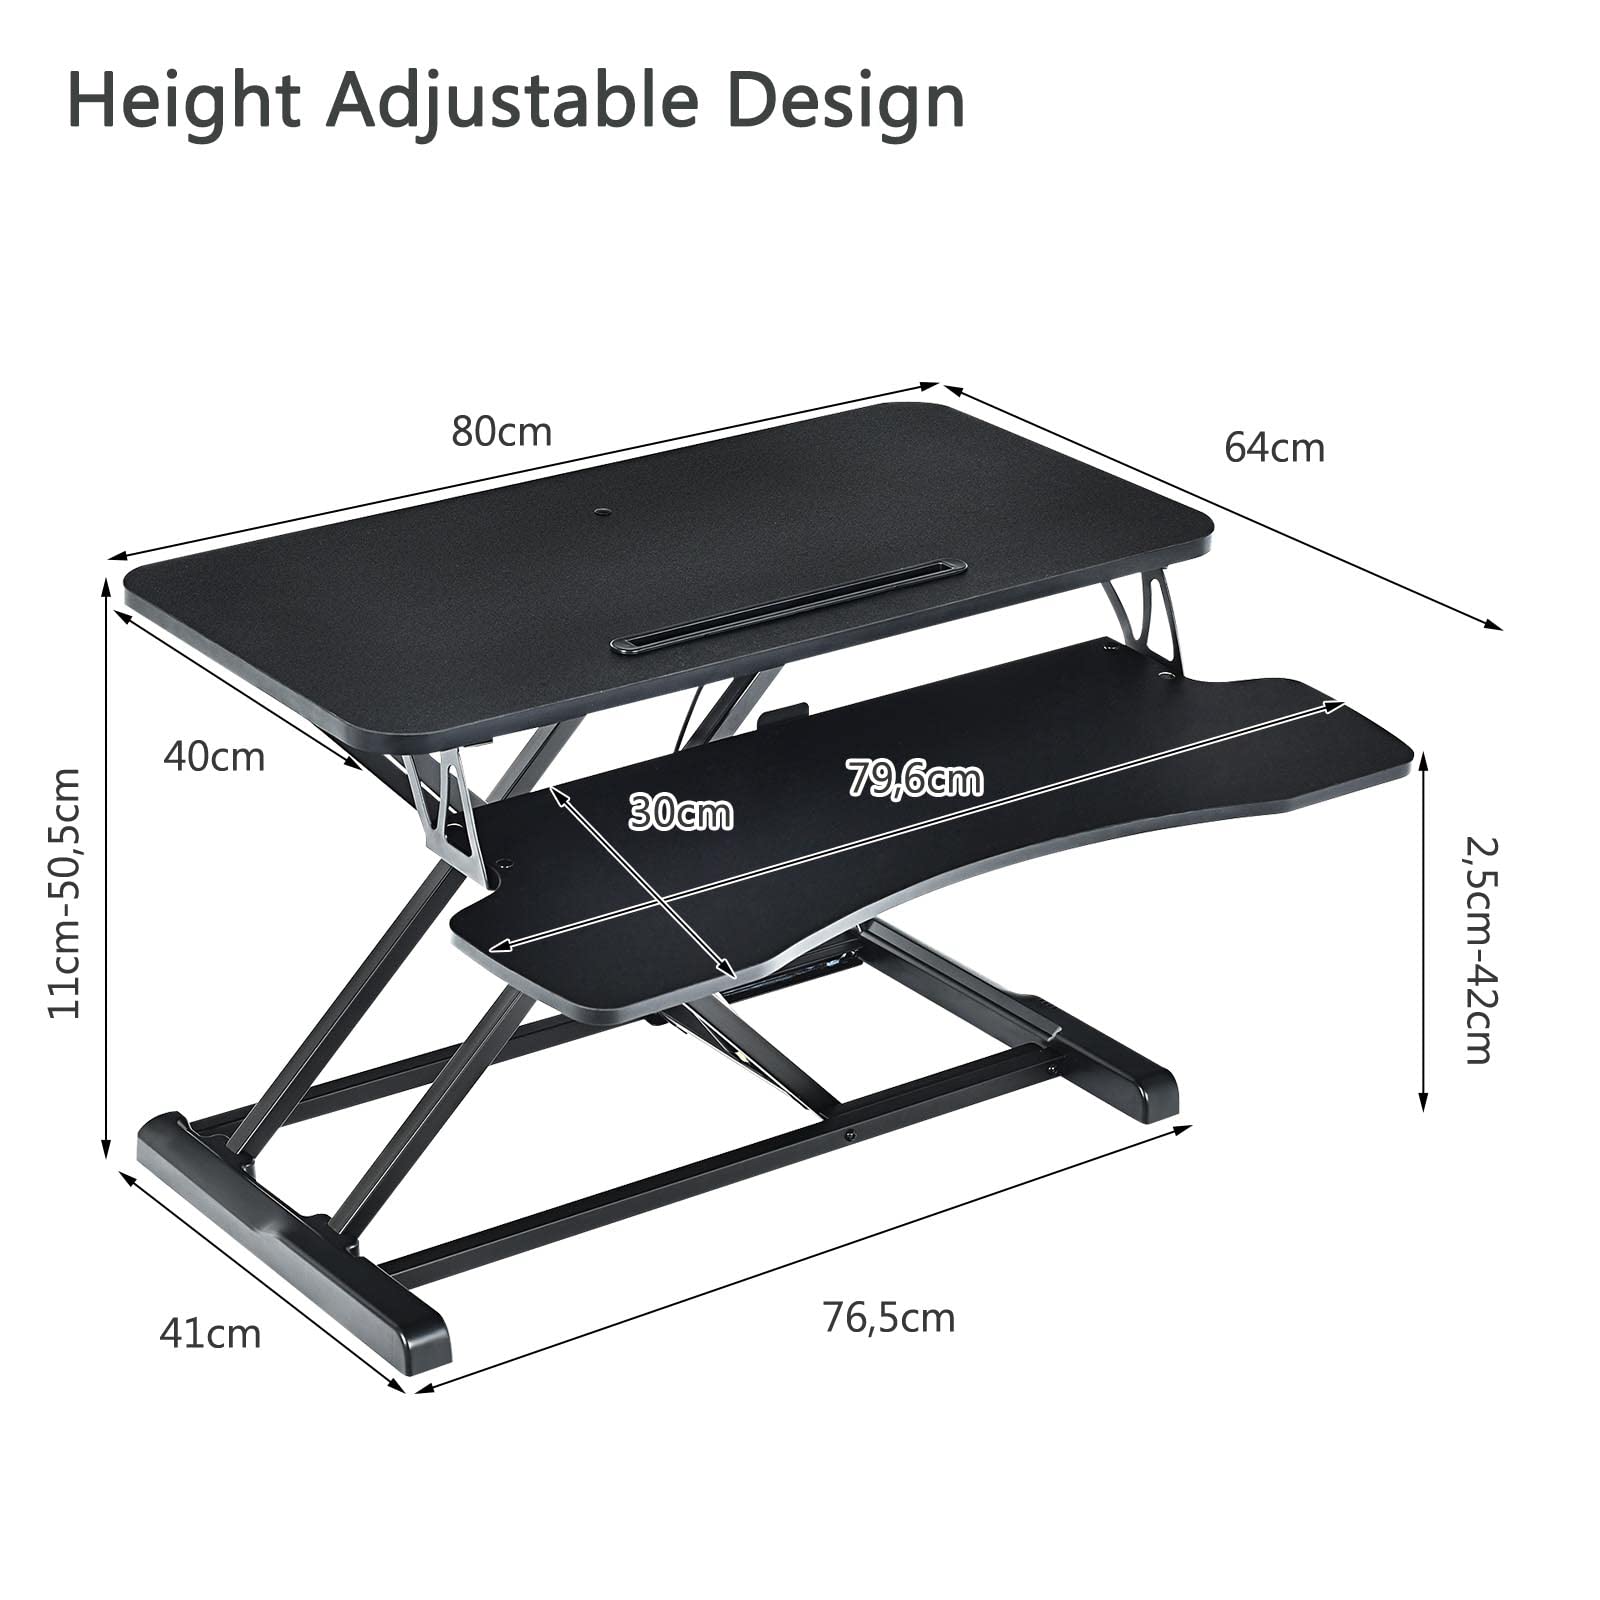 Bộ Bàn Chuyển Đổi Độ Cao Folding Table Adjustable Standing Desk Stand